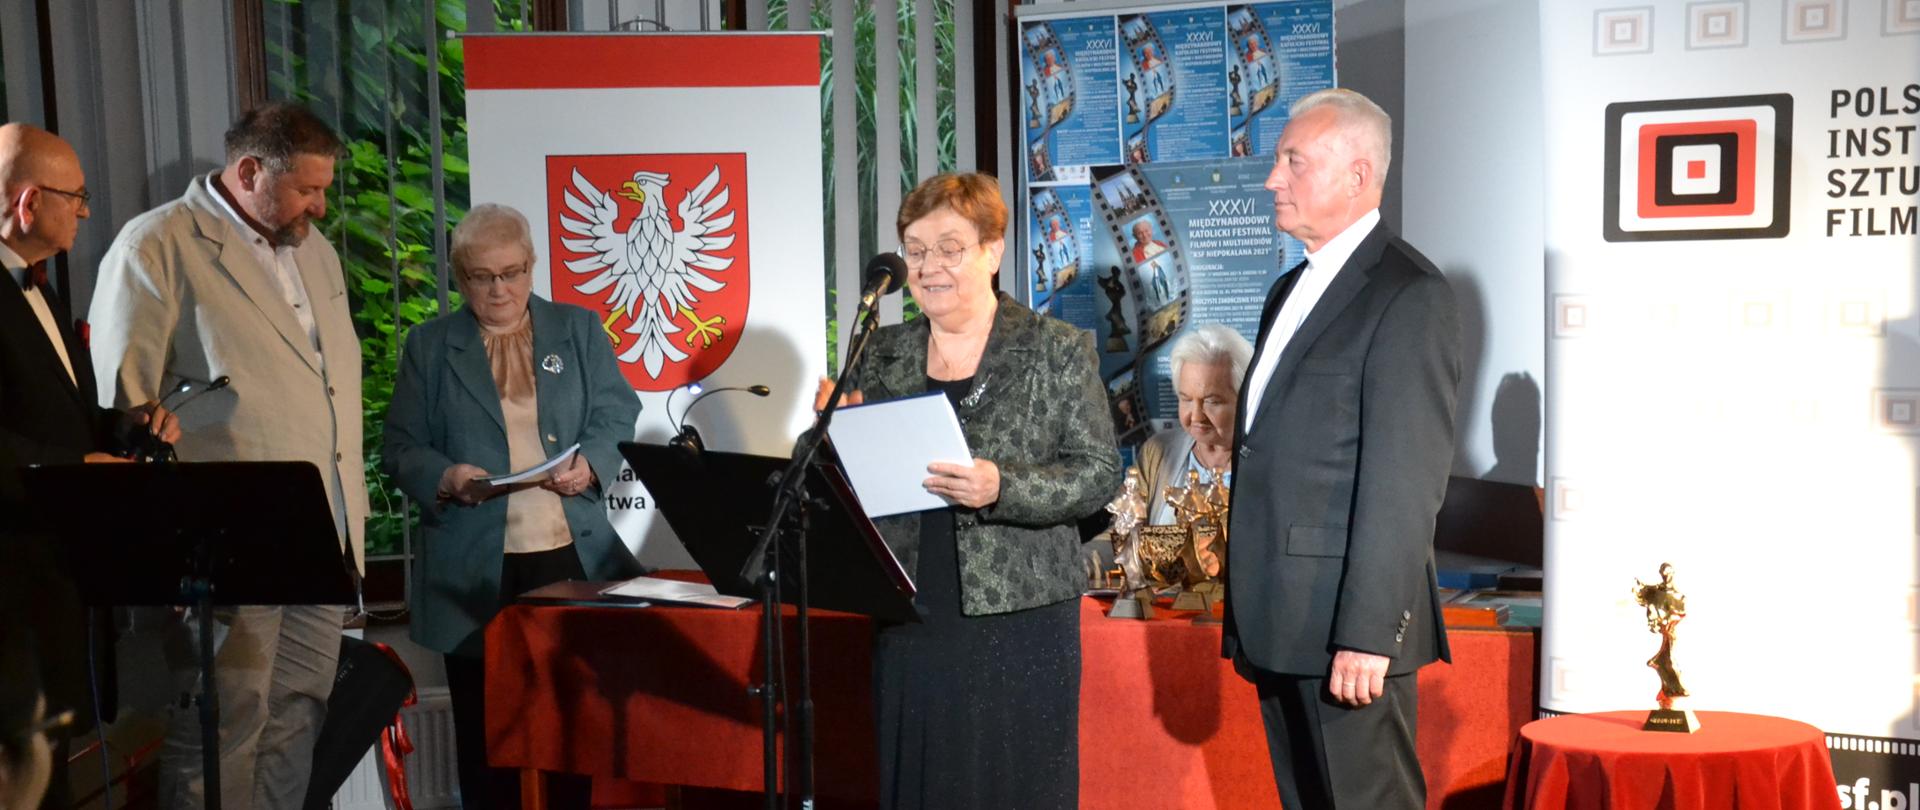 Wystąpienie wiceprzewodniczącej KRRiT Teresy Bochwic, obok stoją organizatorzy festiwalu